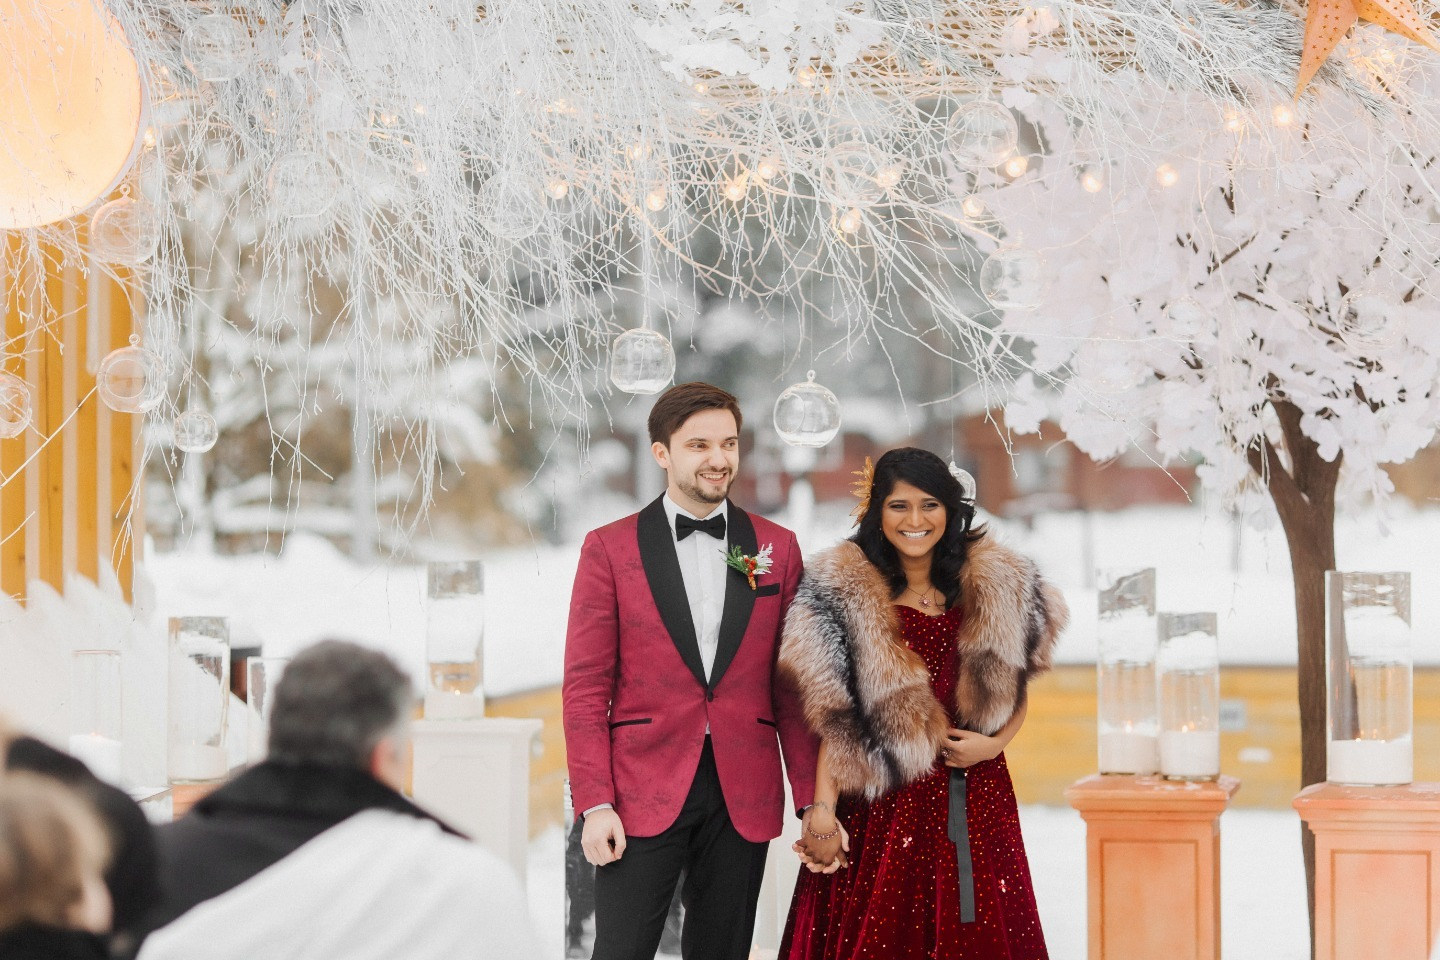 ФОТО ИЗ СТАТЬИ: Зимняя сказка в красных тонах: русско-индийская свадьба